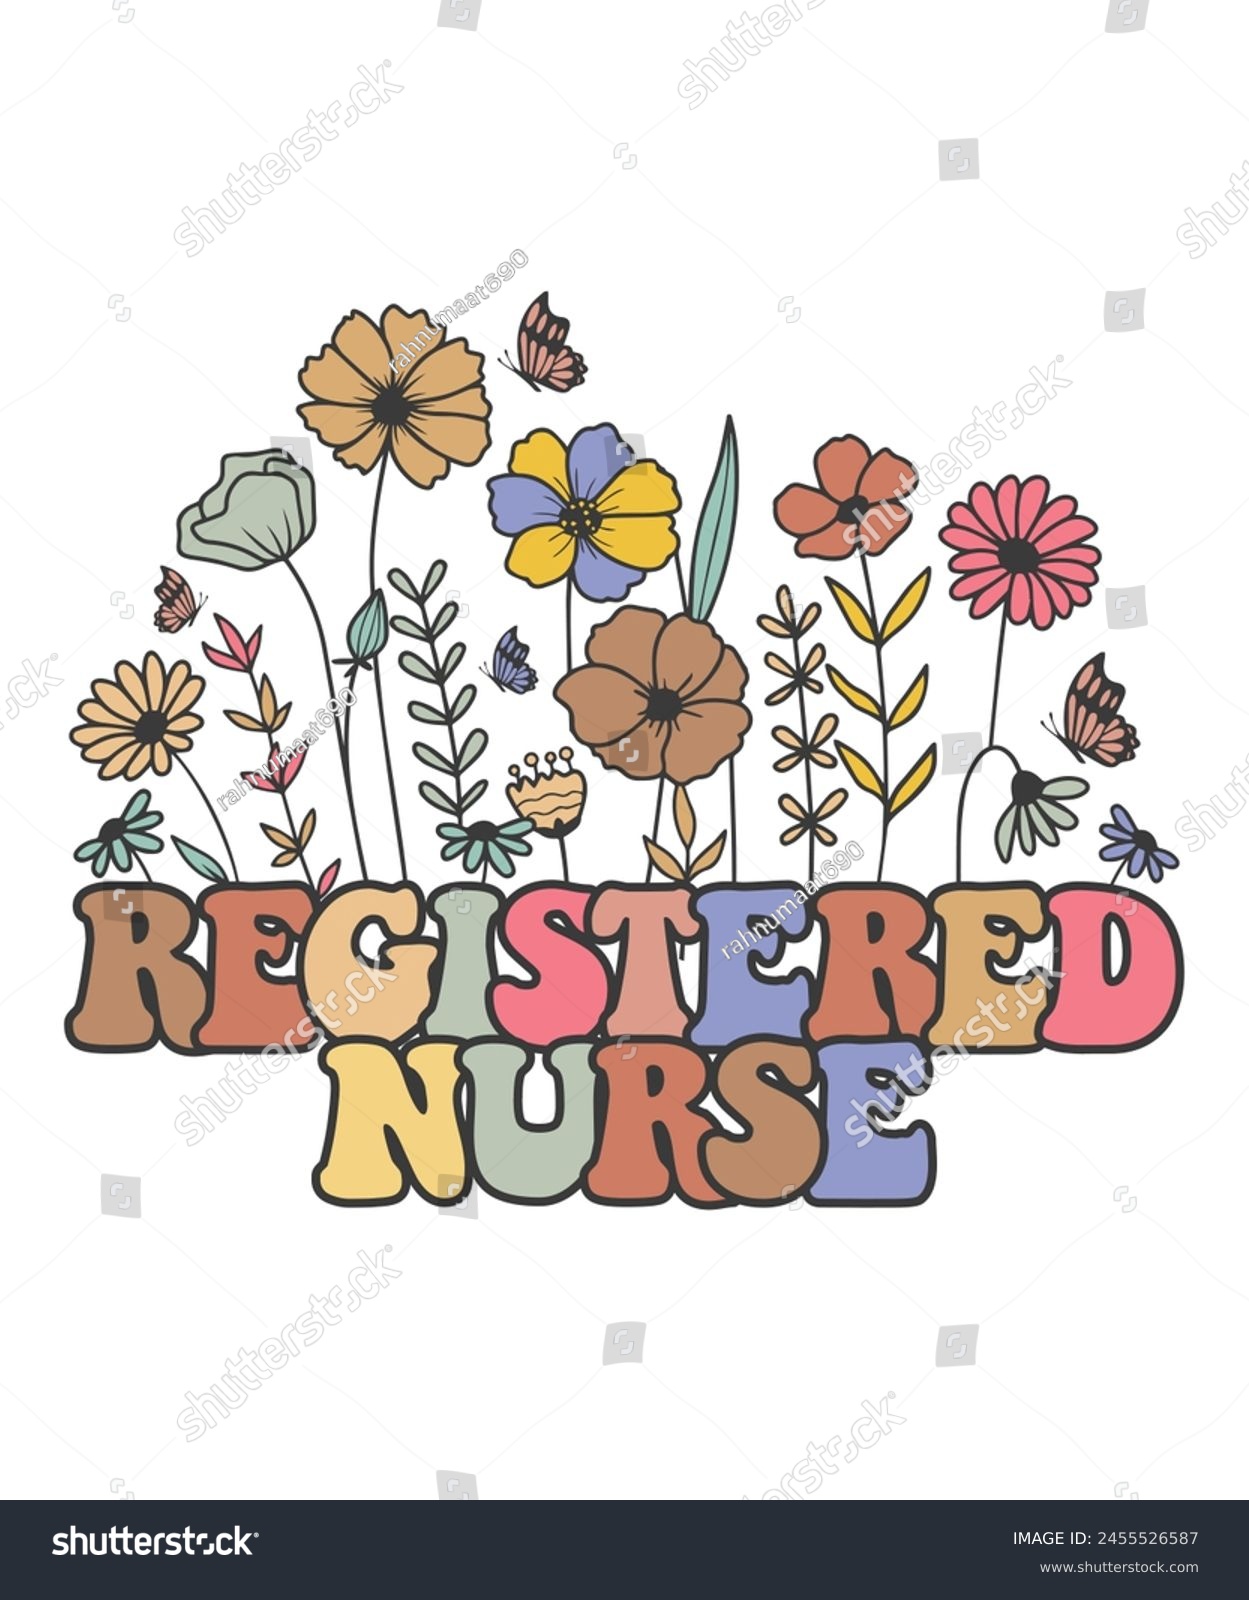 SVG of Floral registered nurse vintage Flower profession svg